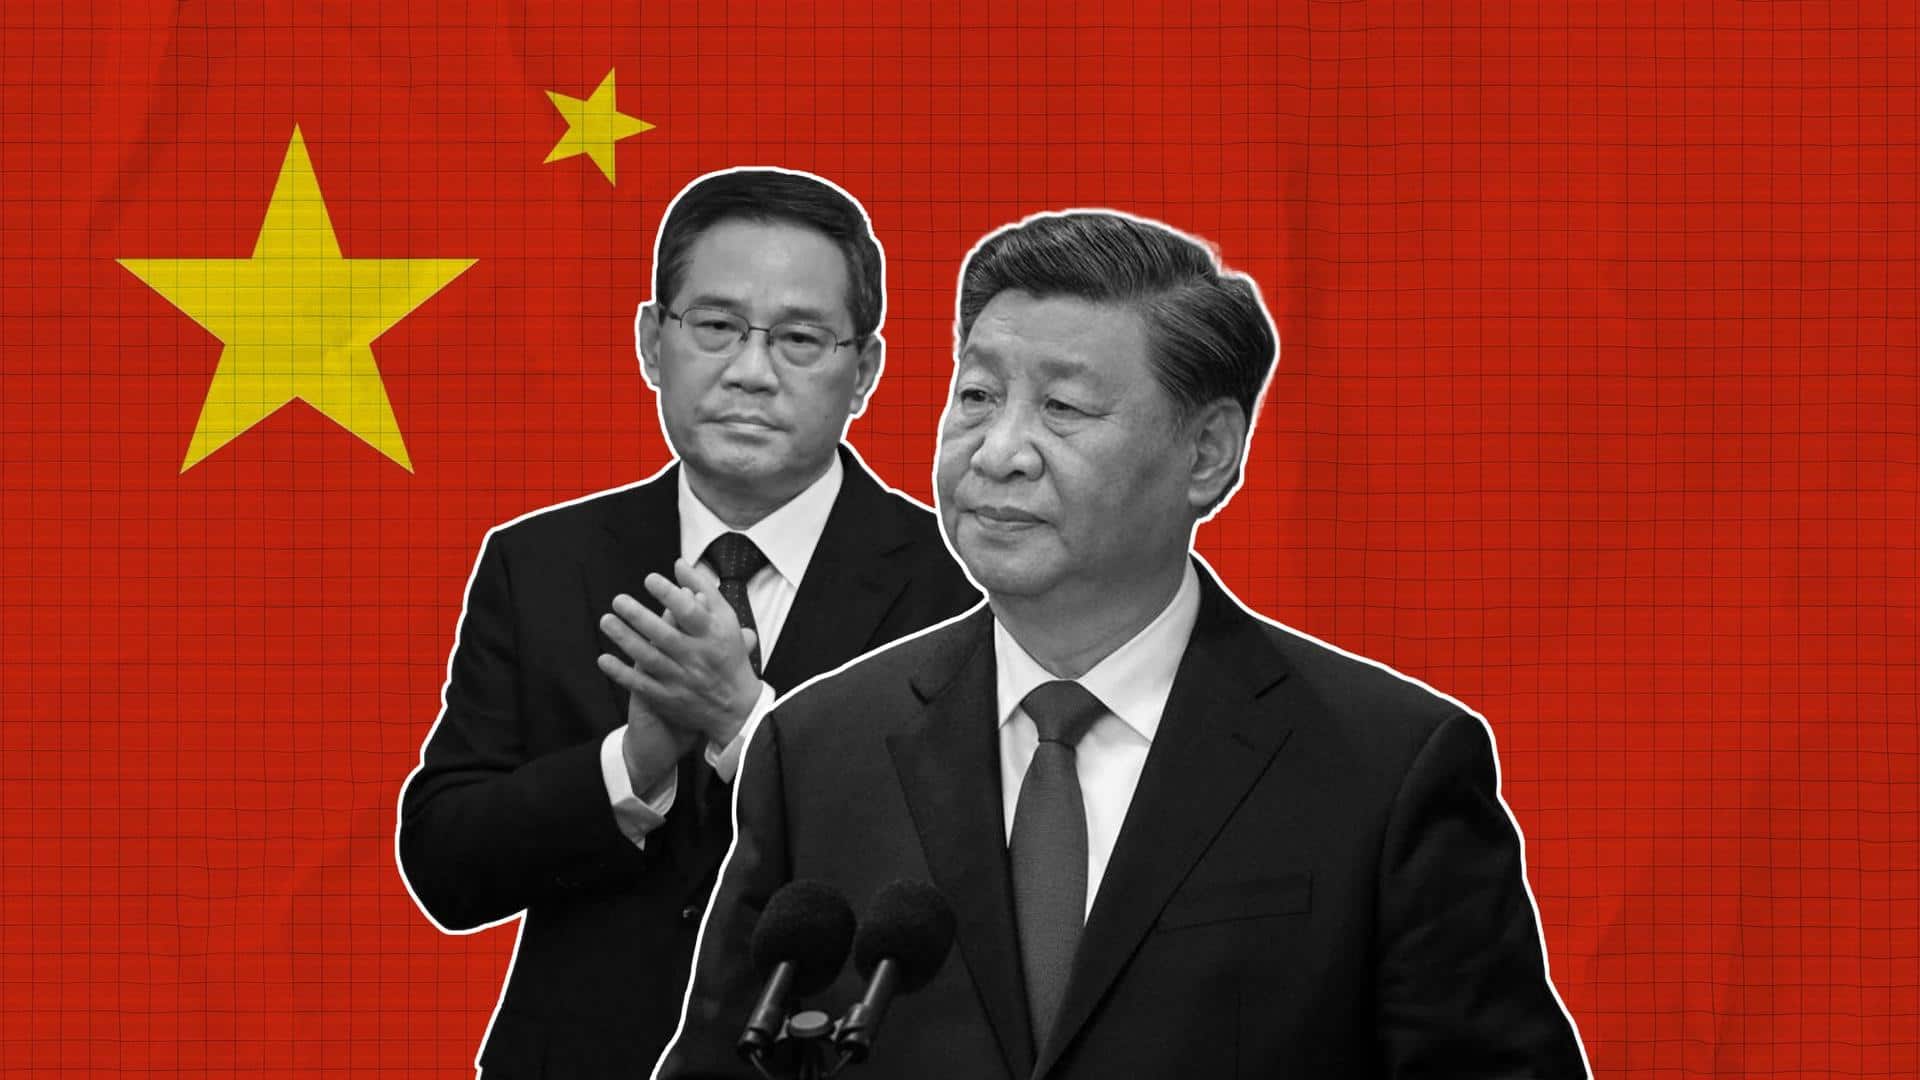 President Xi Jinping's aide Li Qiang to become China's premier